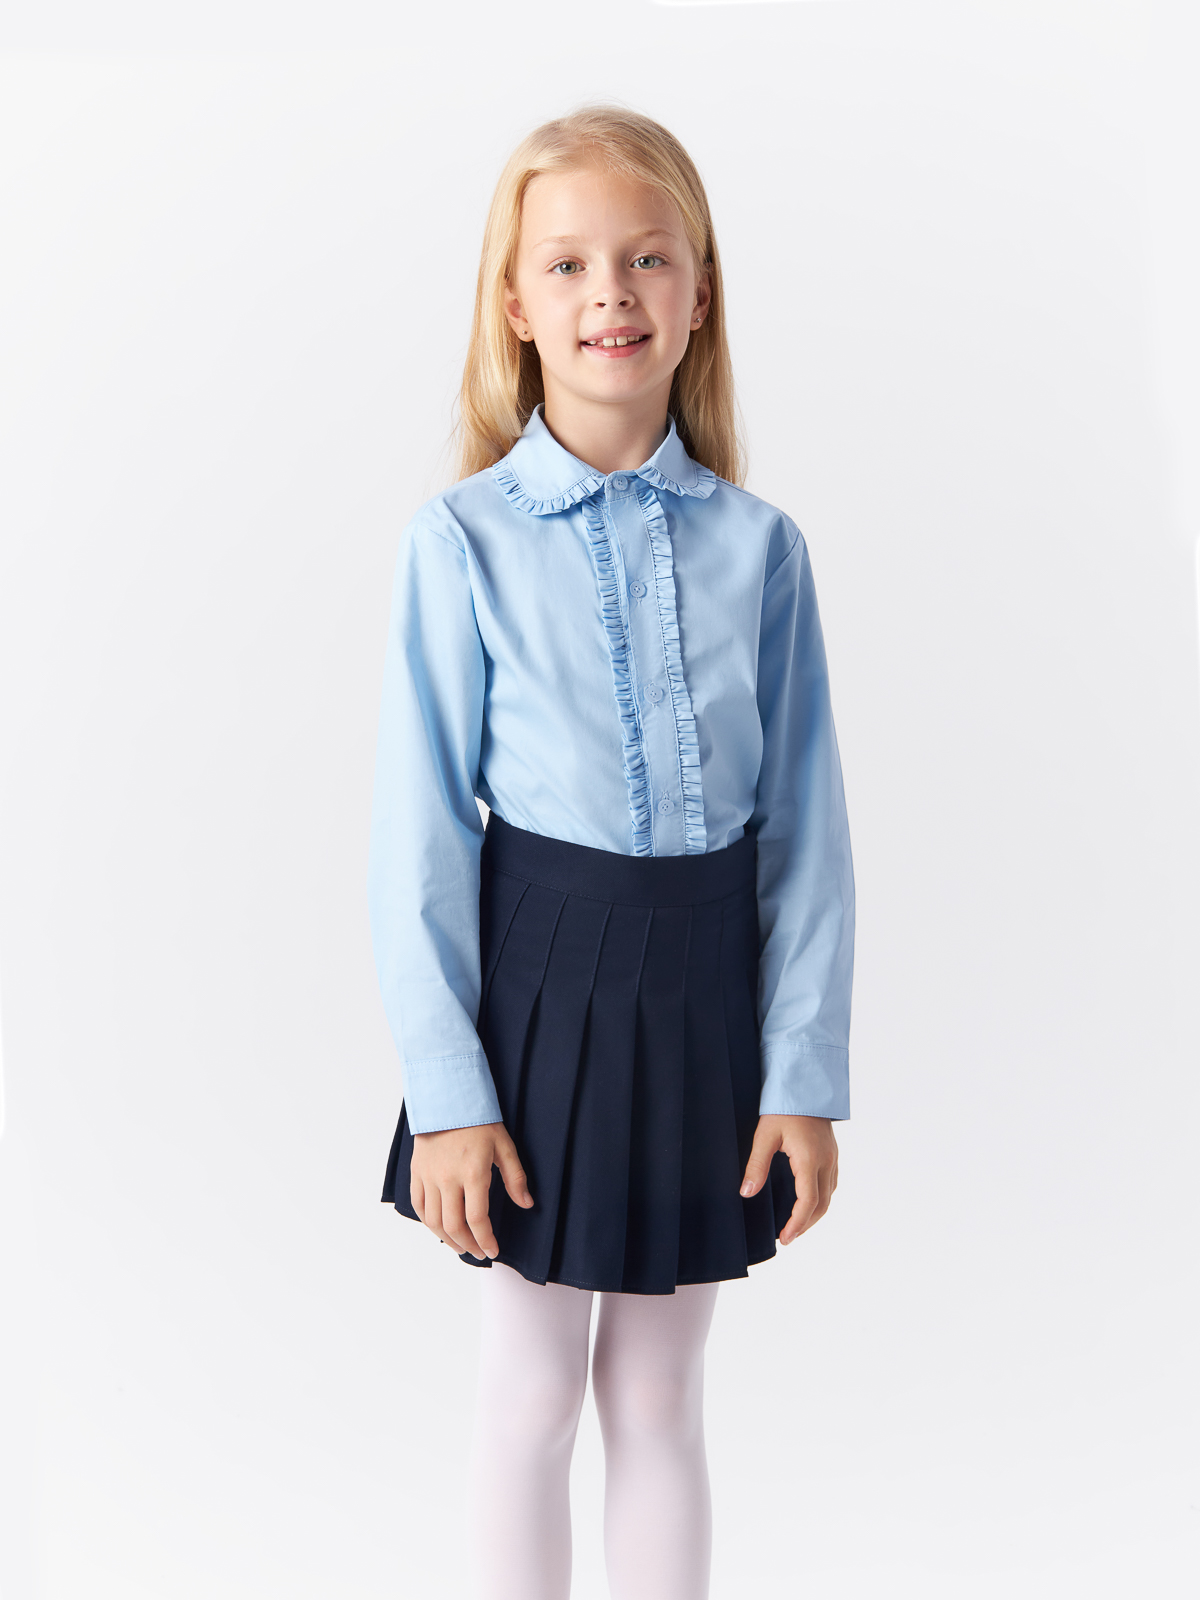 Блузка Yiwu Xflot Supply Chain детская, BS-2blue, размер 160 см блузка классическая с принтом сердечко белая button blue 140